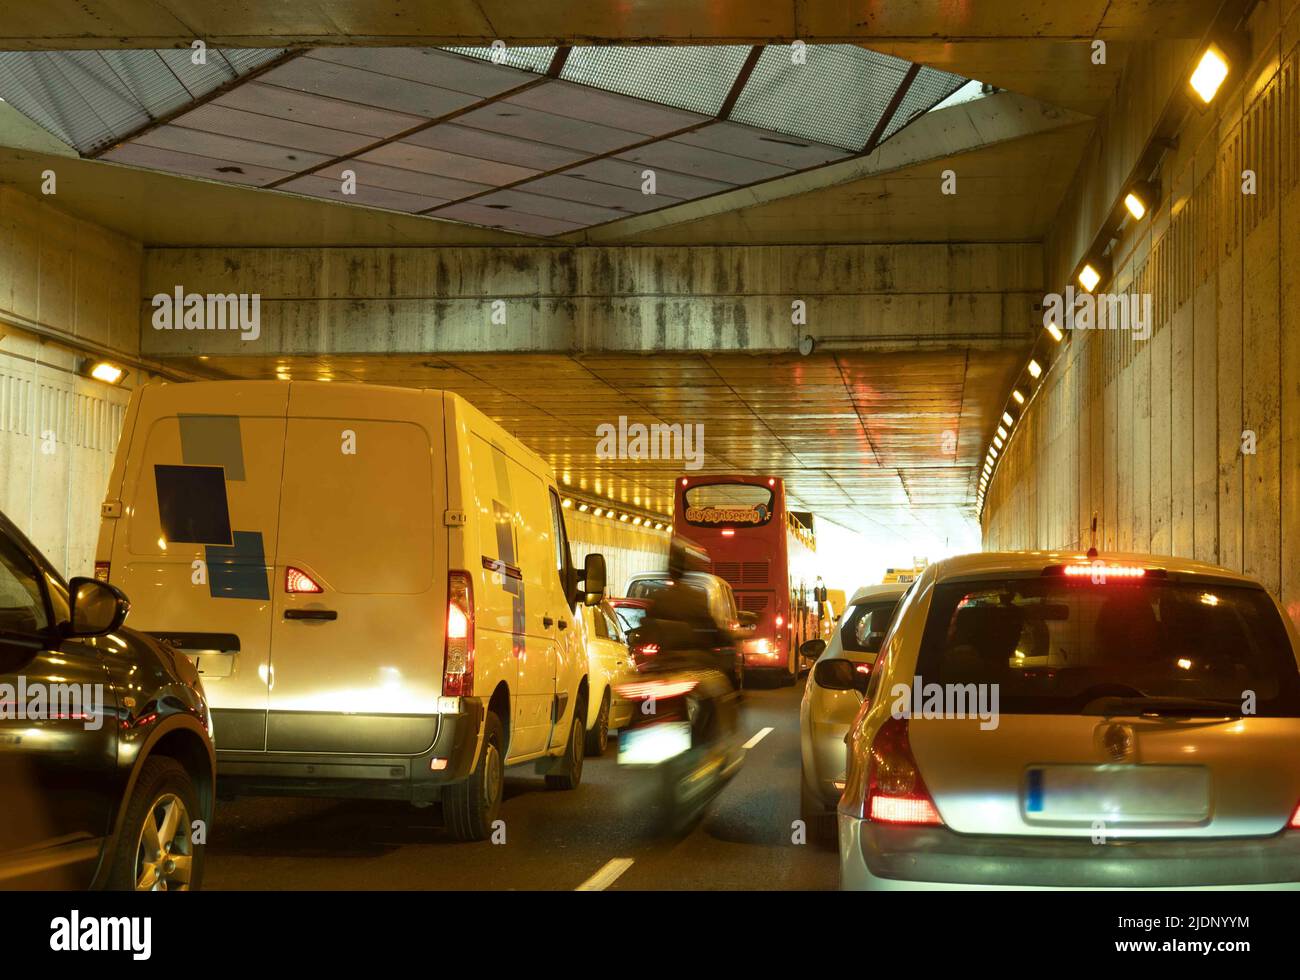 Tráfico pesado y atascado de vehículos en el túnel de la ciudad. Foto de stock